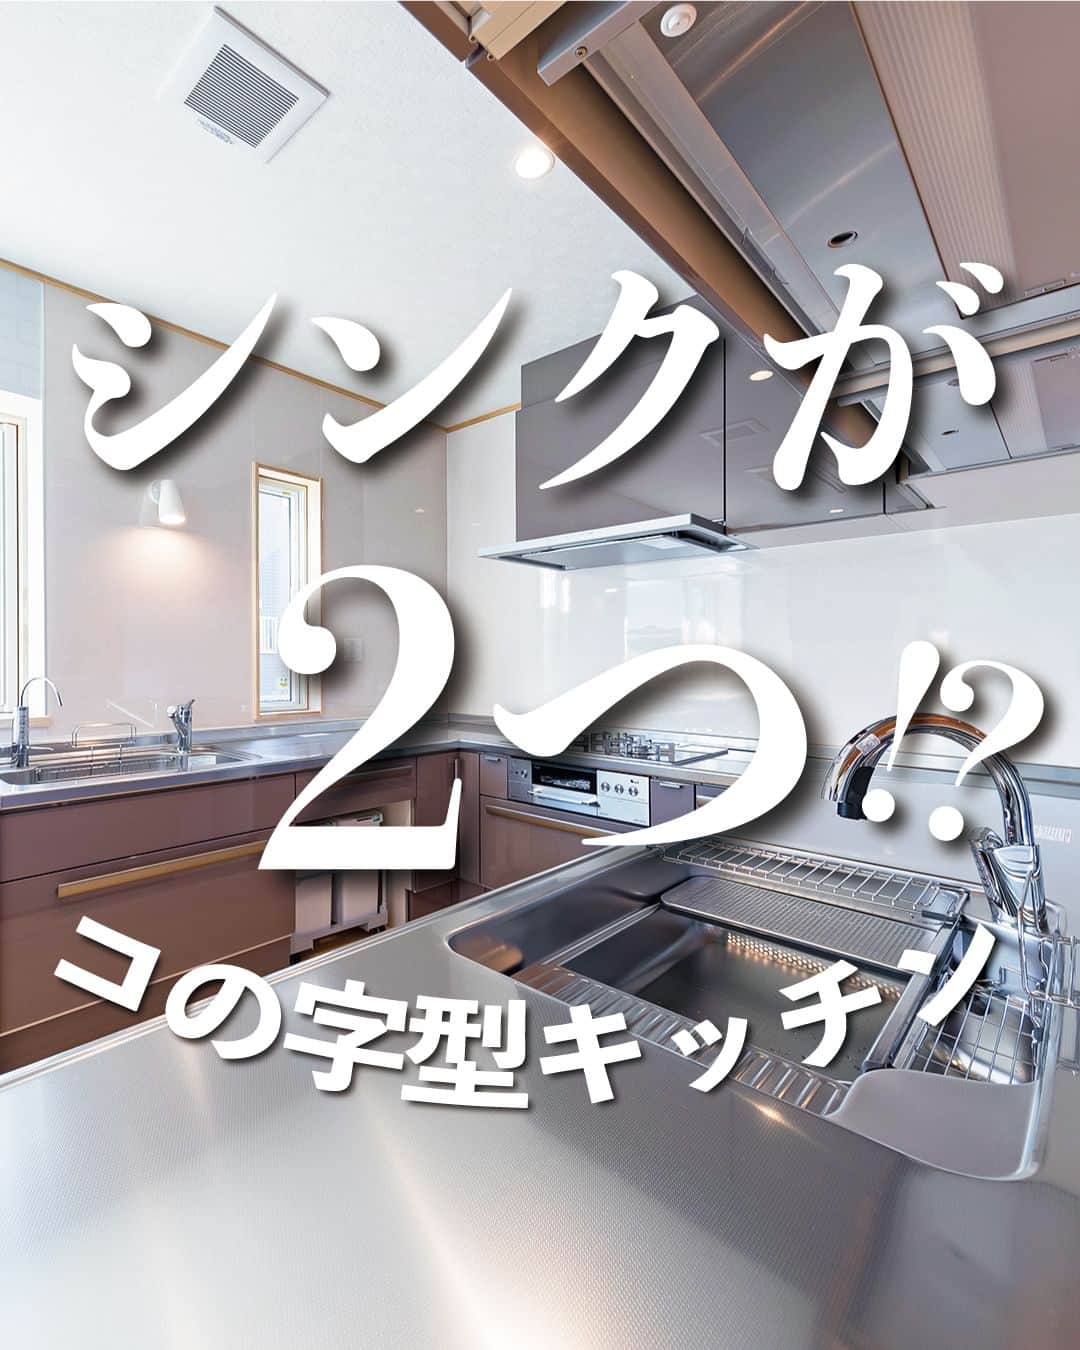 太陽住宅株式会社のインスタグラム：「太陽住宅の家 ▷▷▷ @taiyojutaku …………………………………………………………  本日ご紹介するのは【シンクが２つ?!コの字型キッチン】です☺︎  こちらのお家のキッチンはコの字型のキッチンです。 とはいえ、普通のコの字型キッチンとはちょっと違うのが分かりますか？  そうです！シンクが２つあるんです！  ダイビングなどが趣味な旦那様用に、料理用シンクとは別に「魚用のシンク」を設けました。旦那様と奥様2人で立っても余裕がある広いキッチンです♪  しかも棚上収納はオートダウンウォールを採用。スイッチ操作で棚が自動的の昇降するシステムなんです！  こんな贅沢なキッチン、お料理するのが楽しくなりますね♪  ⳹【1日3組限定！】オープンハウス開催中！⳼ ◎豊橋市西高師町　 　コンセプトモデルハウス『希望の家』 　ぜひお気軽にお問合せください♪ ………………………………………………………… 残すもの・・・。 記録と、記憶と思い出と。 丈夫で長持ち、太陽住宅の家。 ………………………………………………………… ⁡ HPでもたくさんの #施工事例 を掲載しております😌✨  太陽住宅の家 詳しくはコチラから ▷▷▷ @taiyojutaku  気になることがあれば、いつでもコメント・DM📩お待ちしております🙋  ──────────────────────── 太陽住宅株式会社 愛知県豊橋市三本木町字元三本木18-5 0120-946-265 ────────────────────────  #コの字型キッチン #コの字型キッチン間取 #リシェル #リシェルカップボード #オートダウンウォール #キッチンデザイン #リクシルキッチン #キッチン照明 #キッチン選び #太陽住宅 #豊川土地 #豊橋土地 #豊橋注文住宅 #豊川注文住宅 #工務店がつくる家 #注文住宅のかっこいい工務店 #豊橋家づくり #豊川家づくり #マイホーム計画 #土地探しからの注文住宅 #建売に見えない建売 #自由設計 #子育てママ  #太陽の家 #豊橋建売 #豊川建売 #希望の家 #オープンハウス開催中」